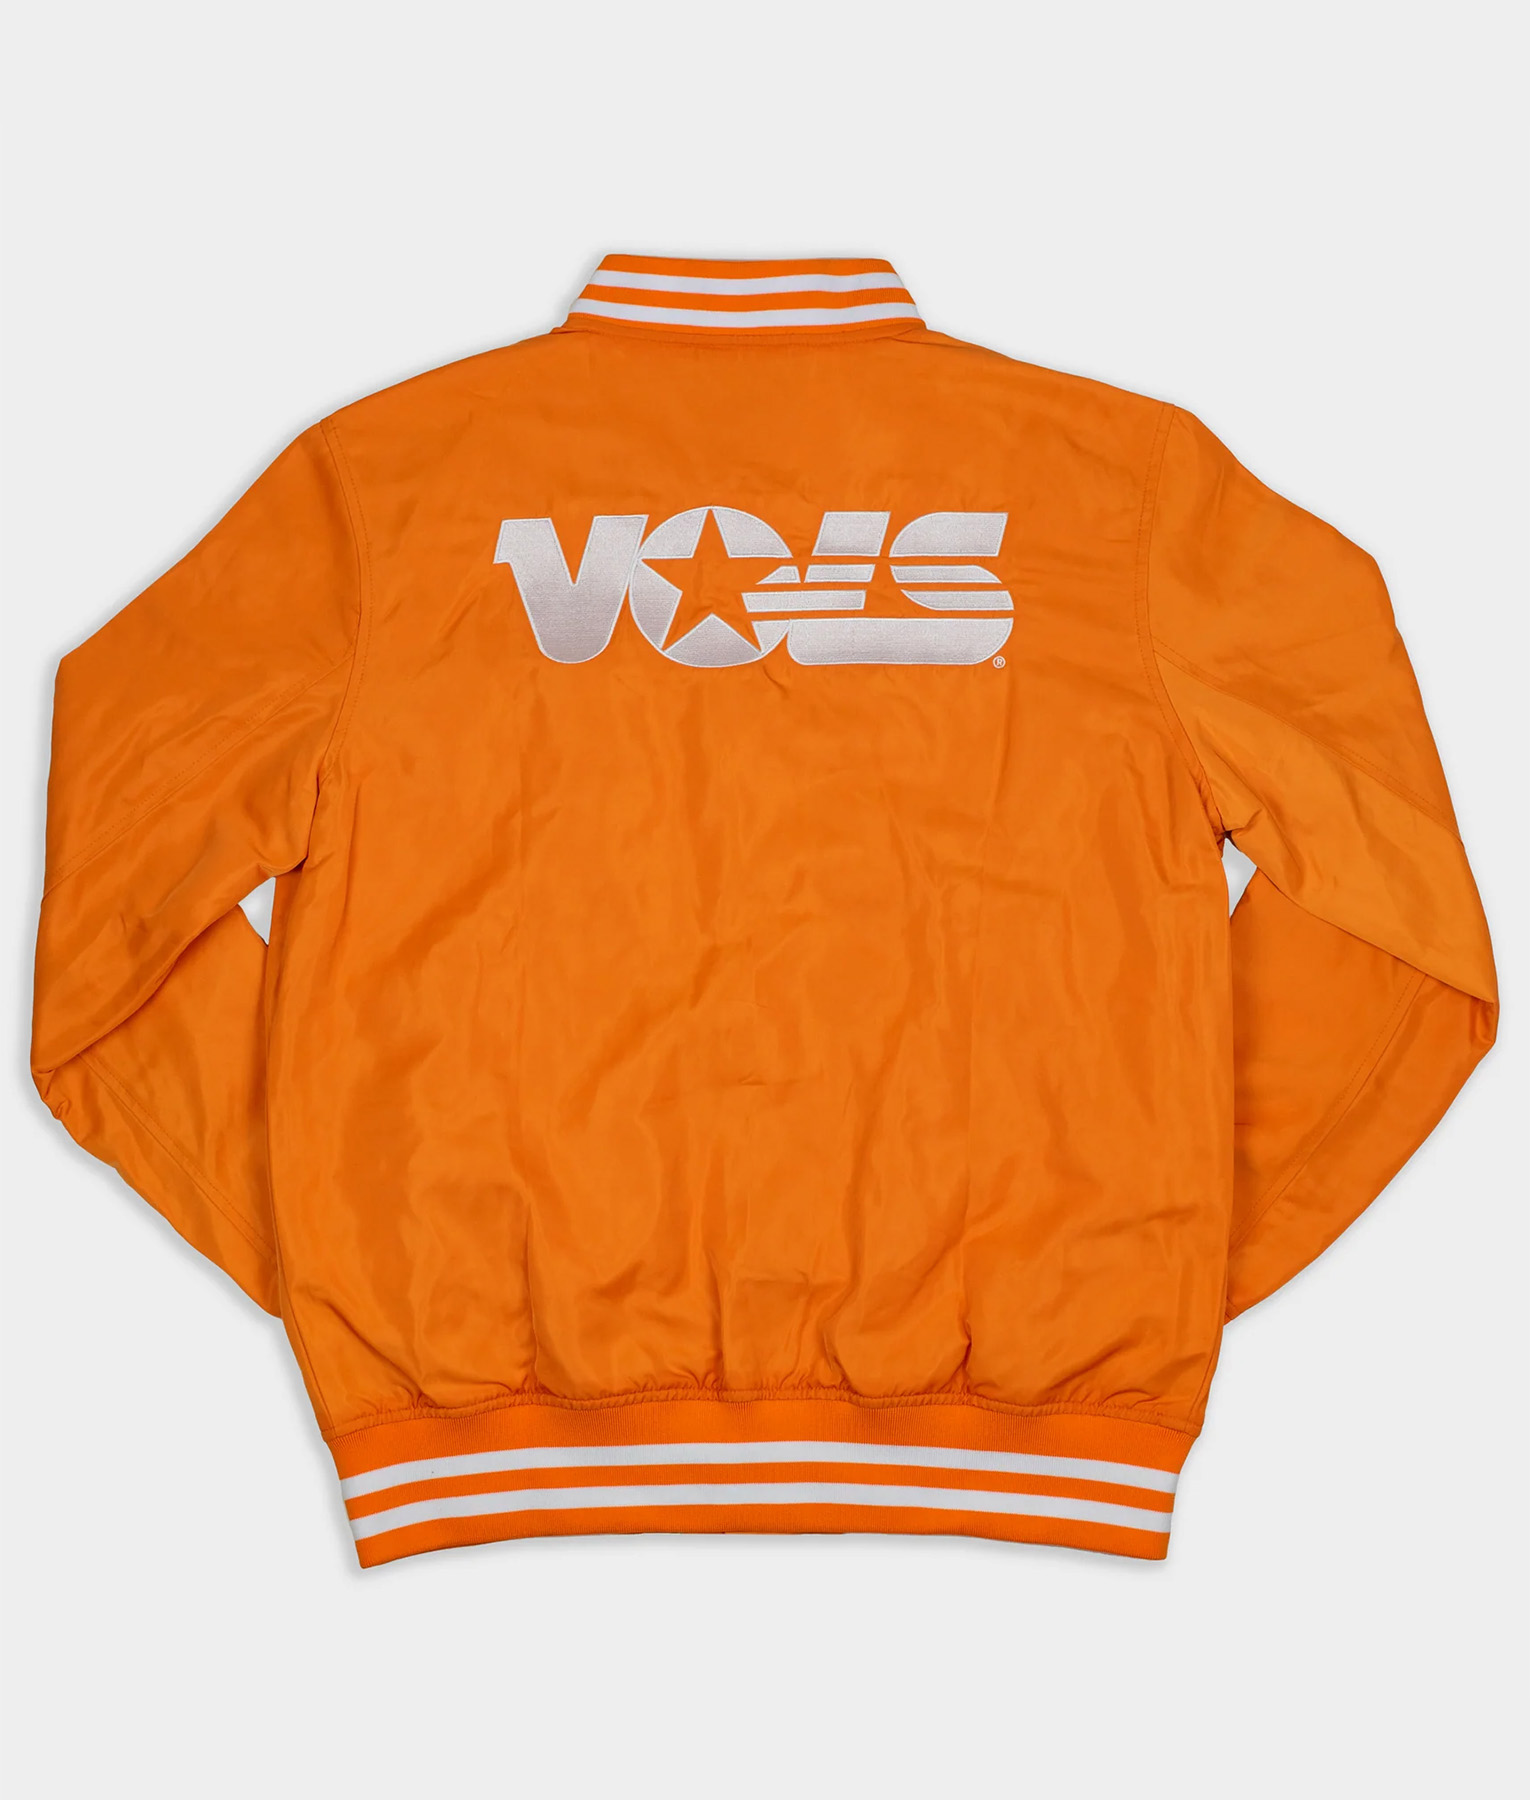 Tennessee Vols Orange Varsity Jacket (1)